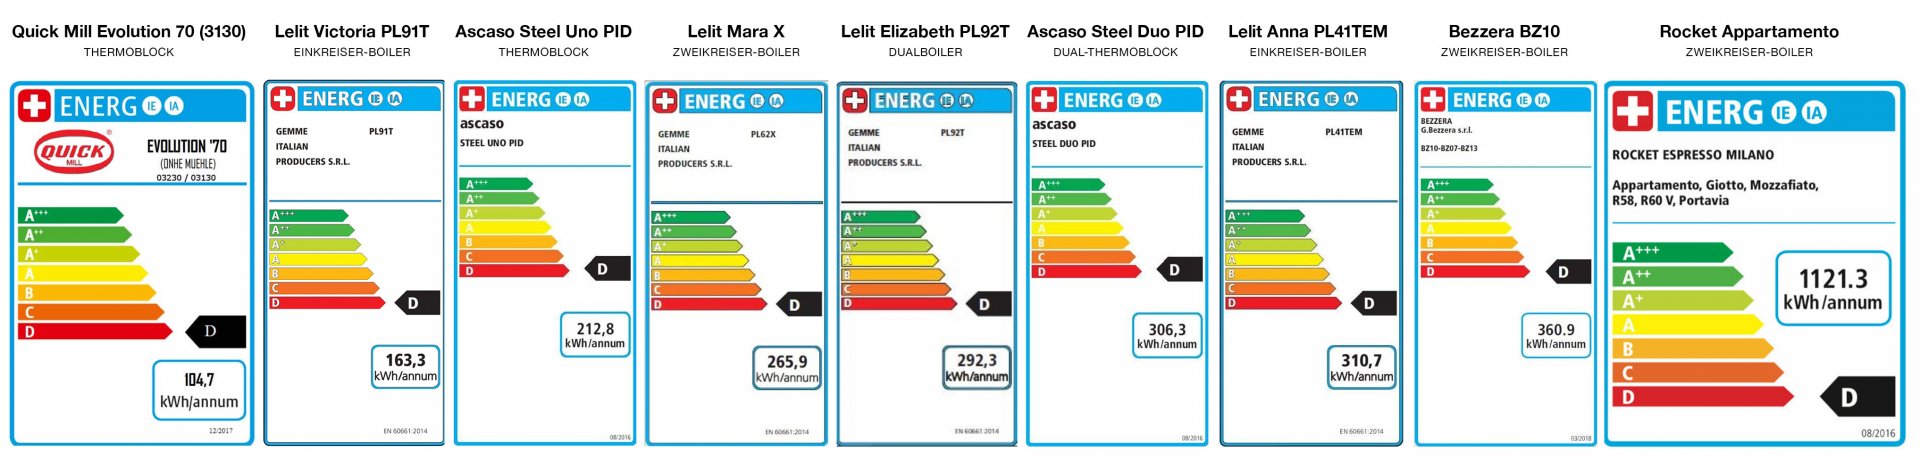 Energiebedarf-Siebtraeger-Vergleich.jpg